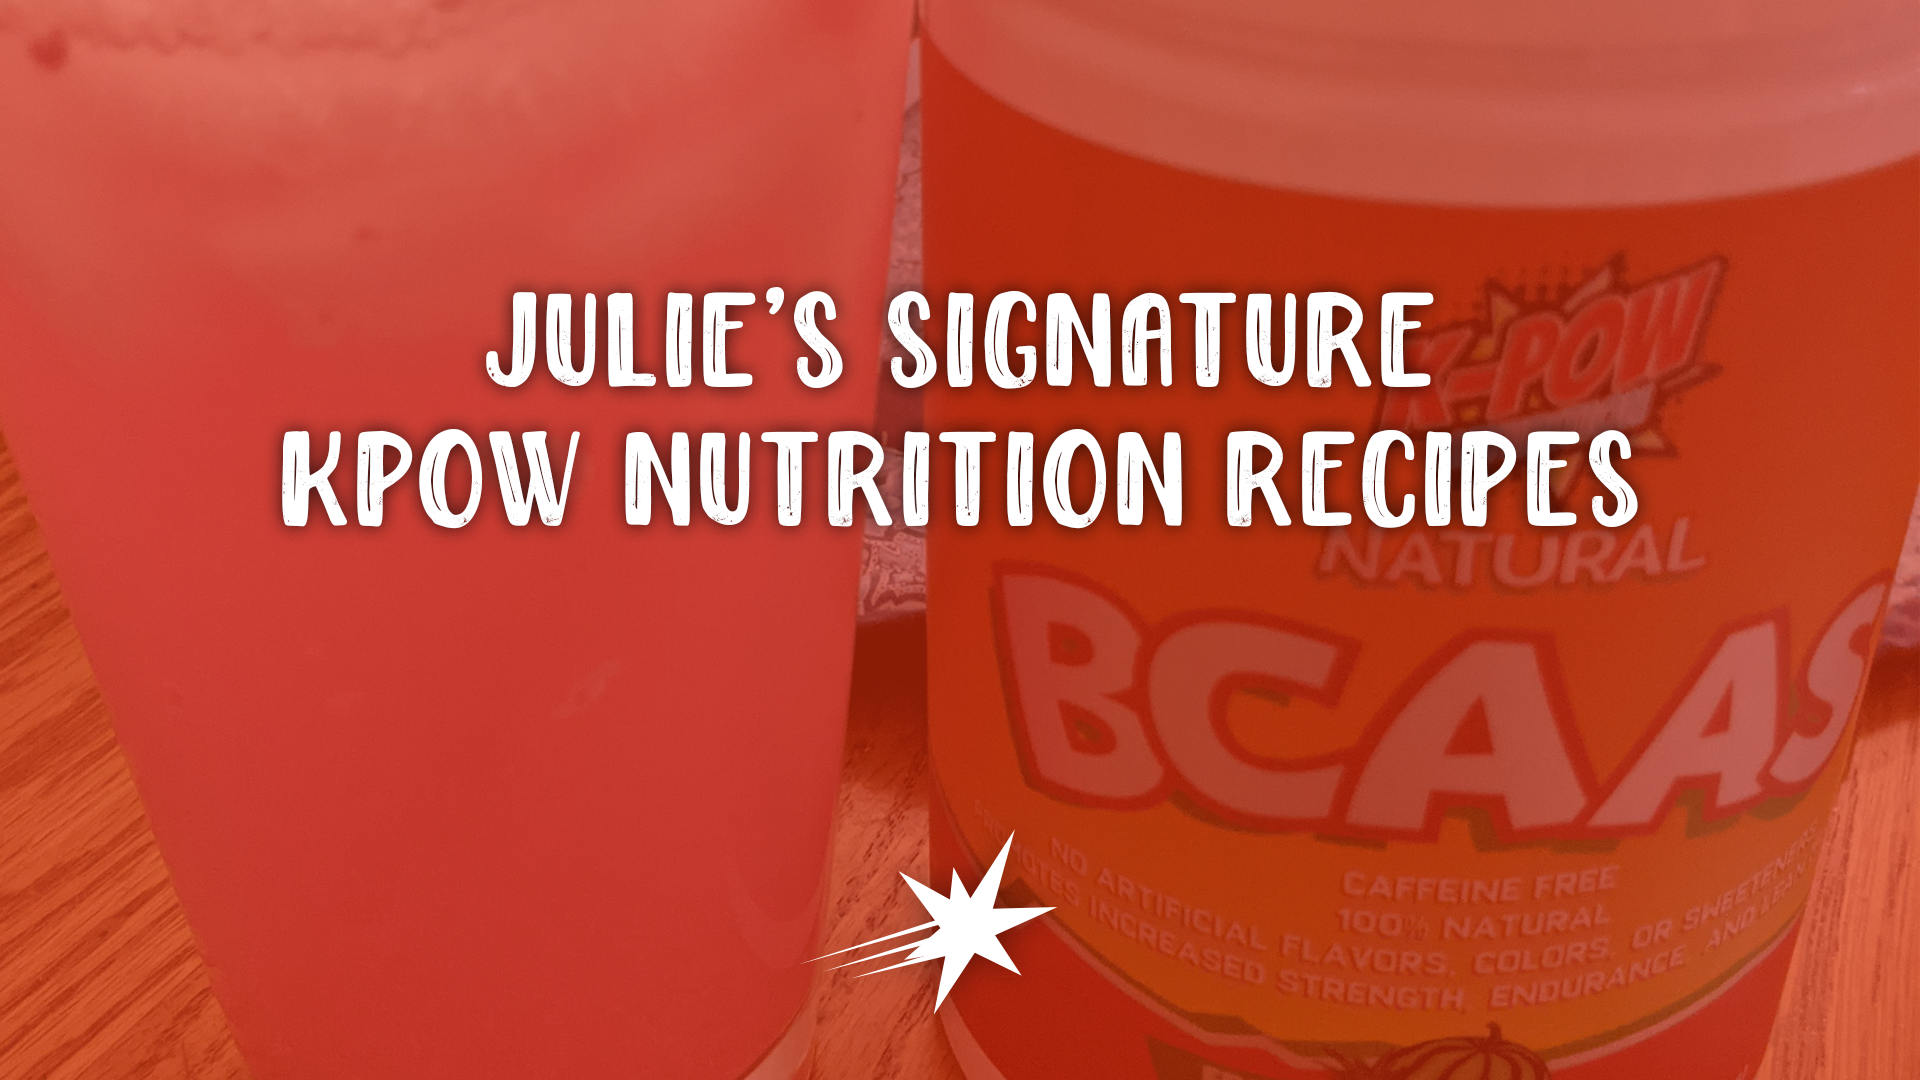 Julie's Signature K-Pow Nutrition Recipes